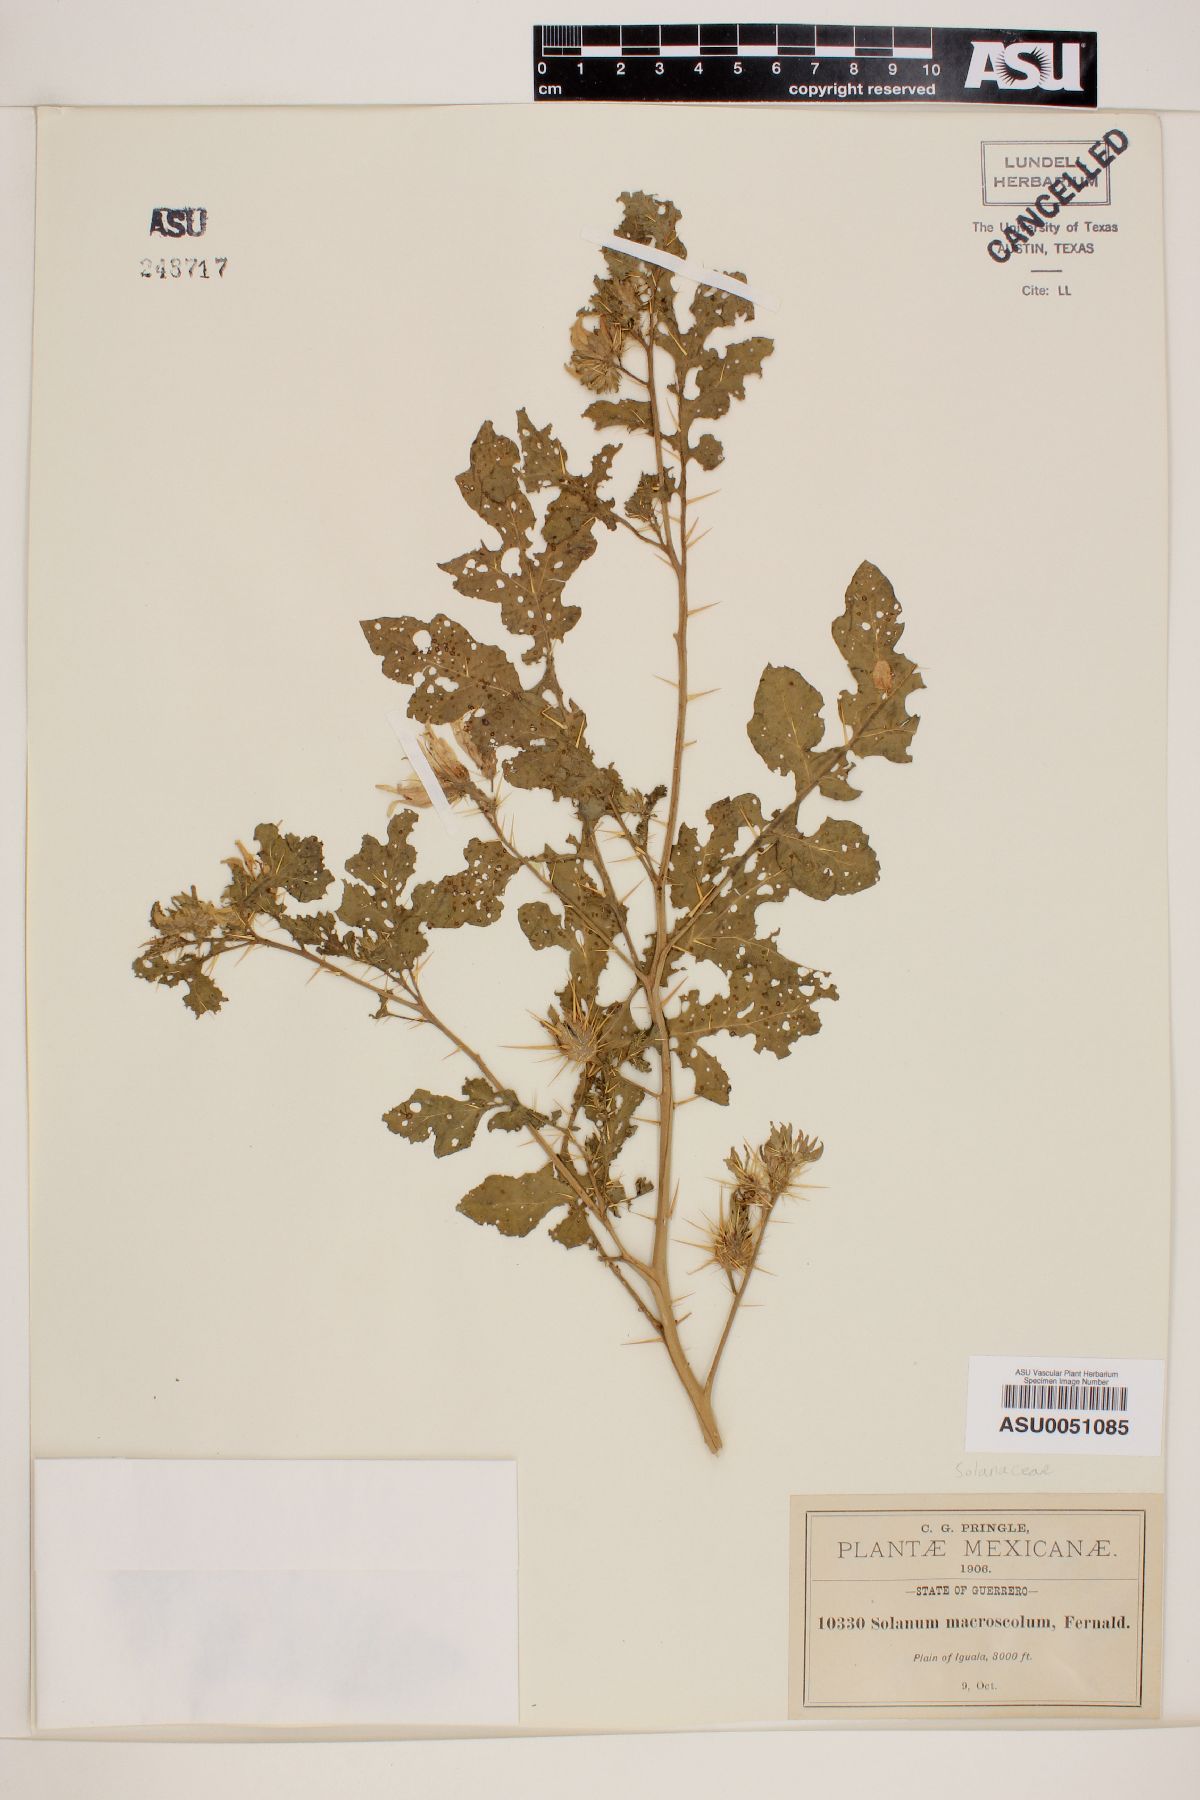 Solanum macroscolum image